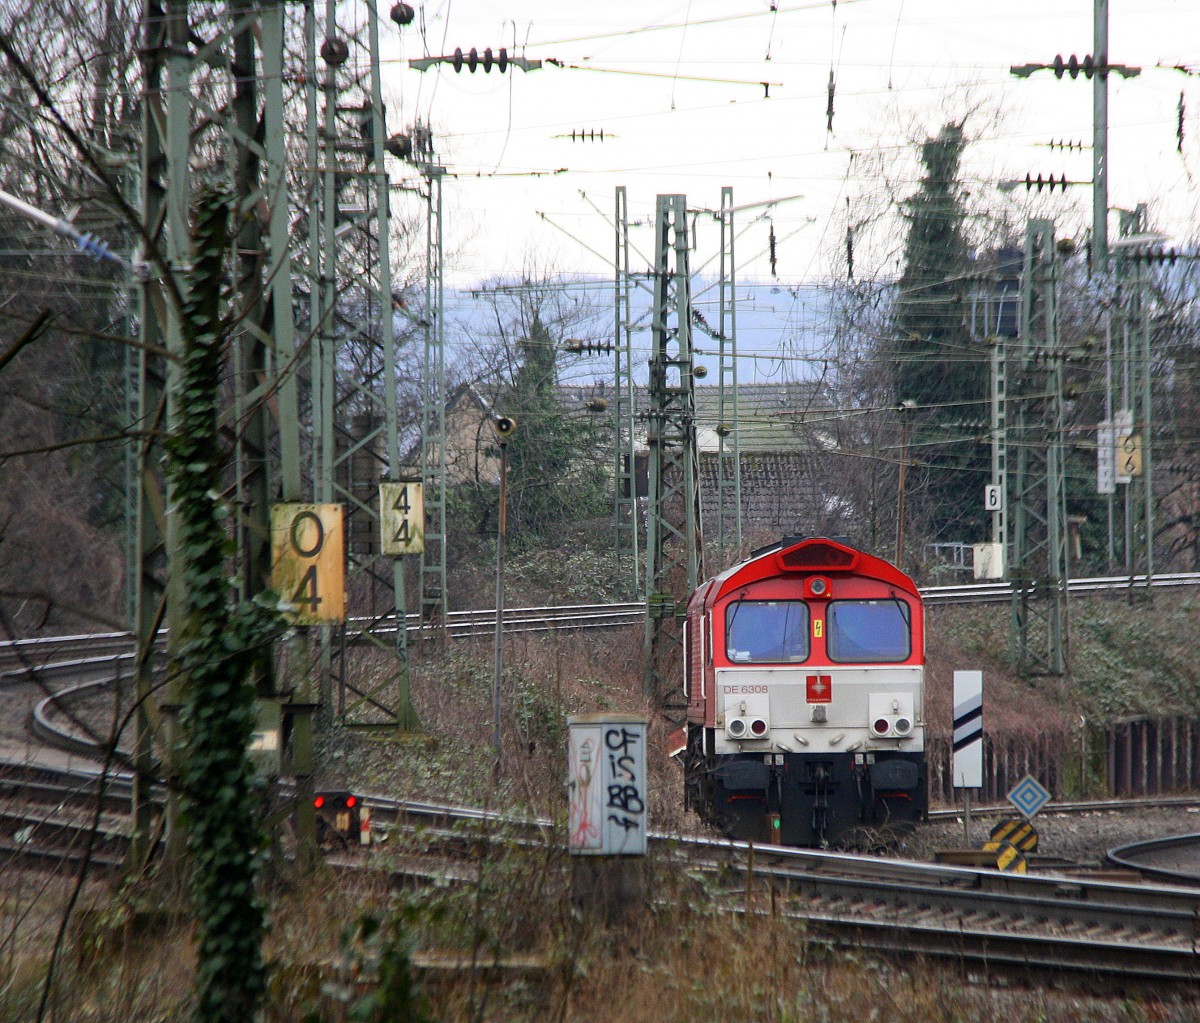 Die Class 66 DE6308  Anja  von Crossrail auf dem Abstellgleis in Aachen-West. Aufgenommen von der Treppe zur Turmstraße in Aachen bei Regenwolken am Nachmittag vom 26.2.2015.